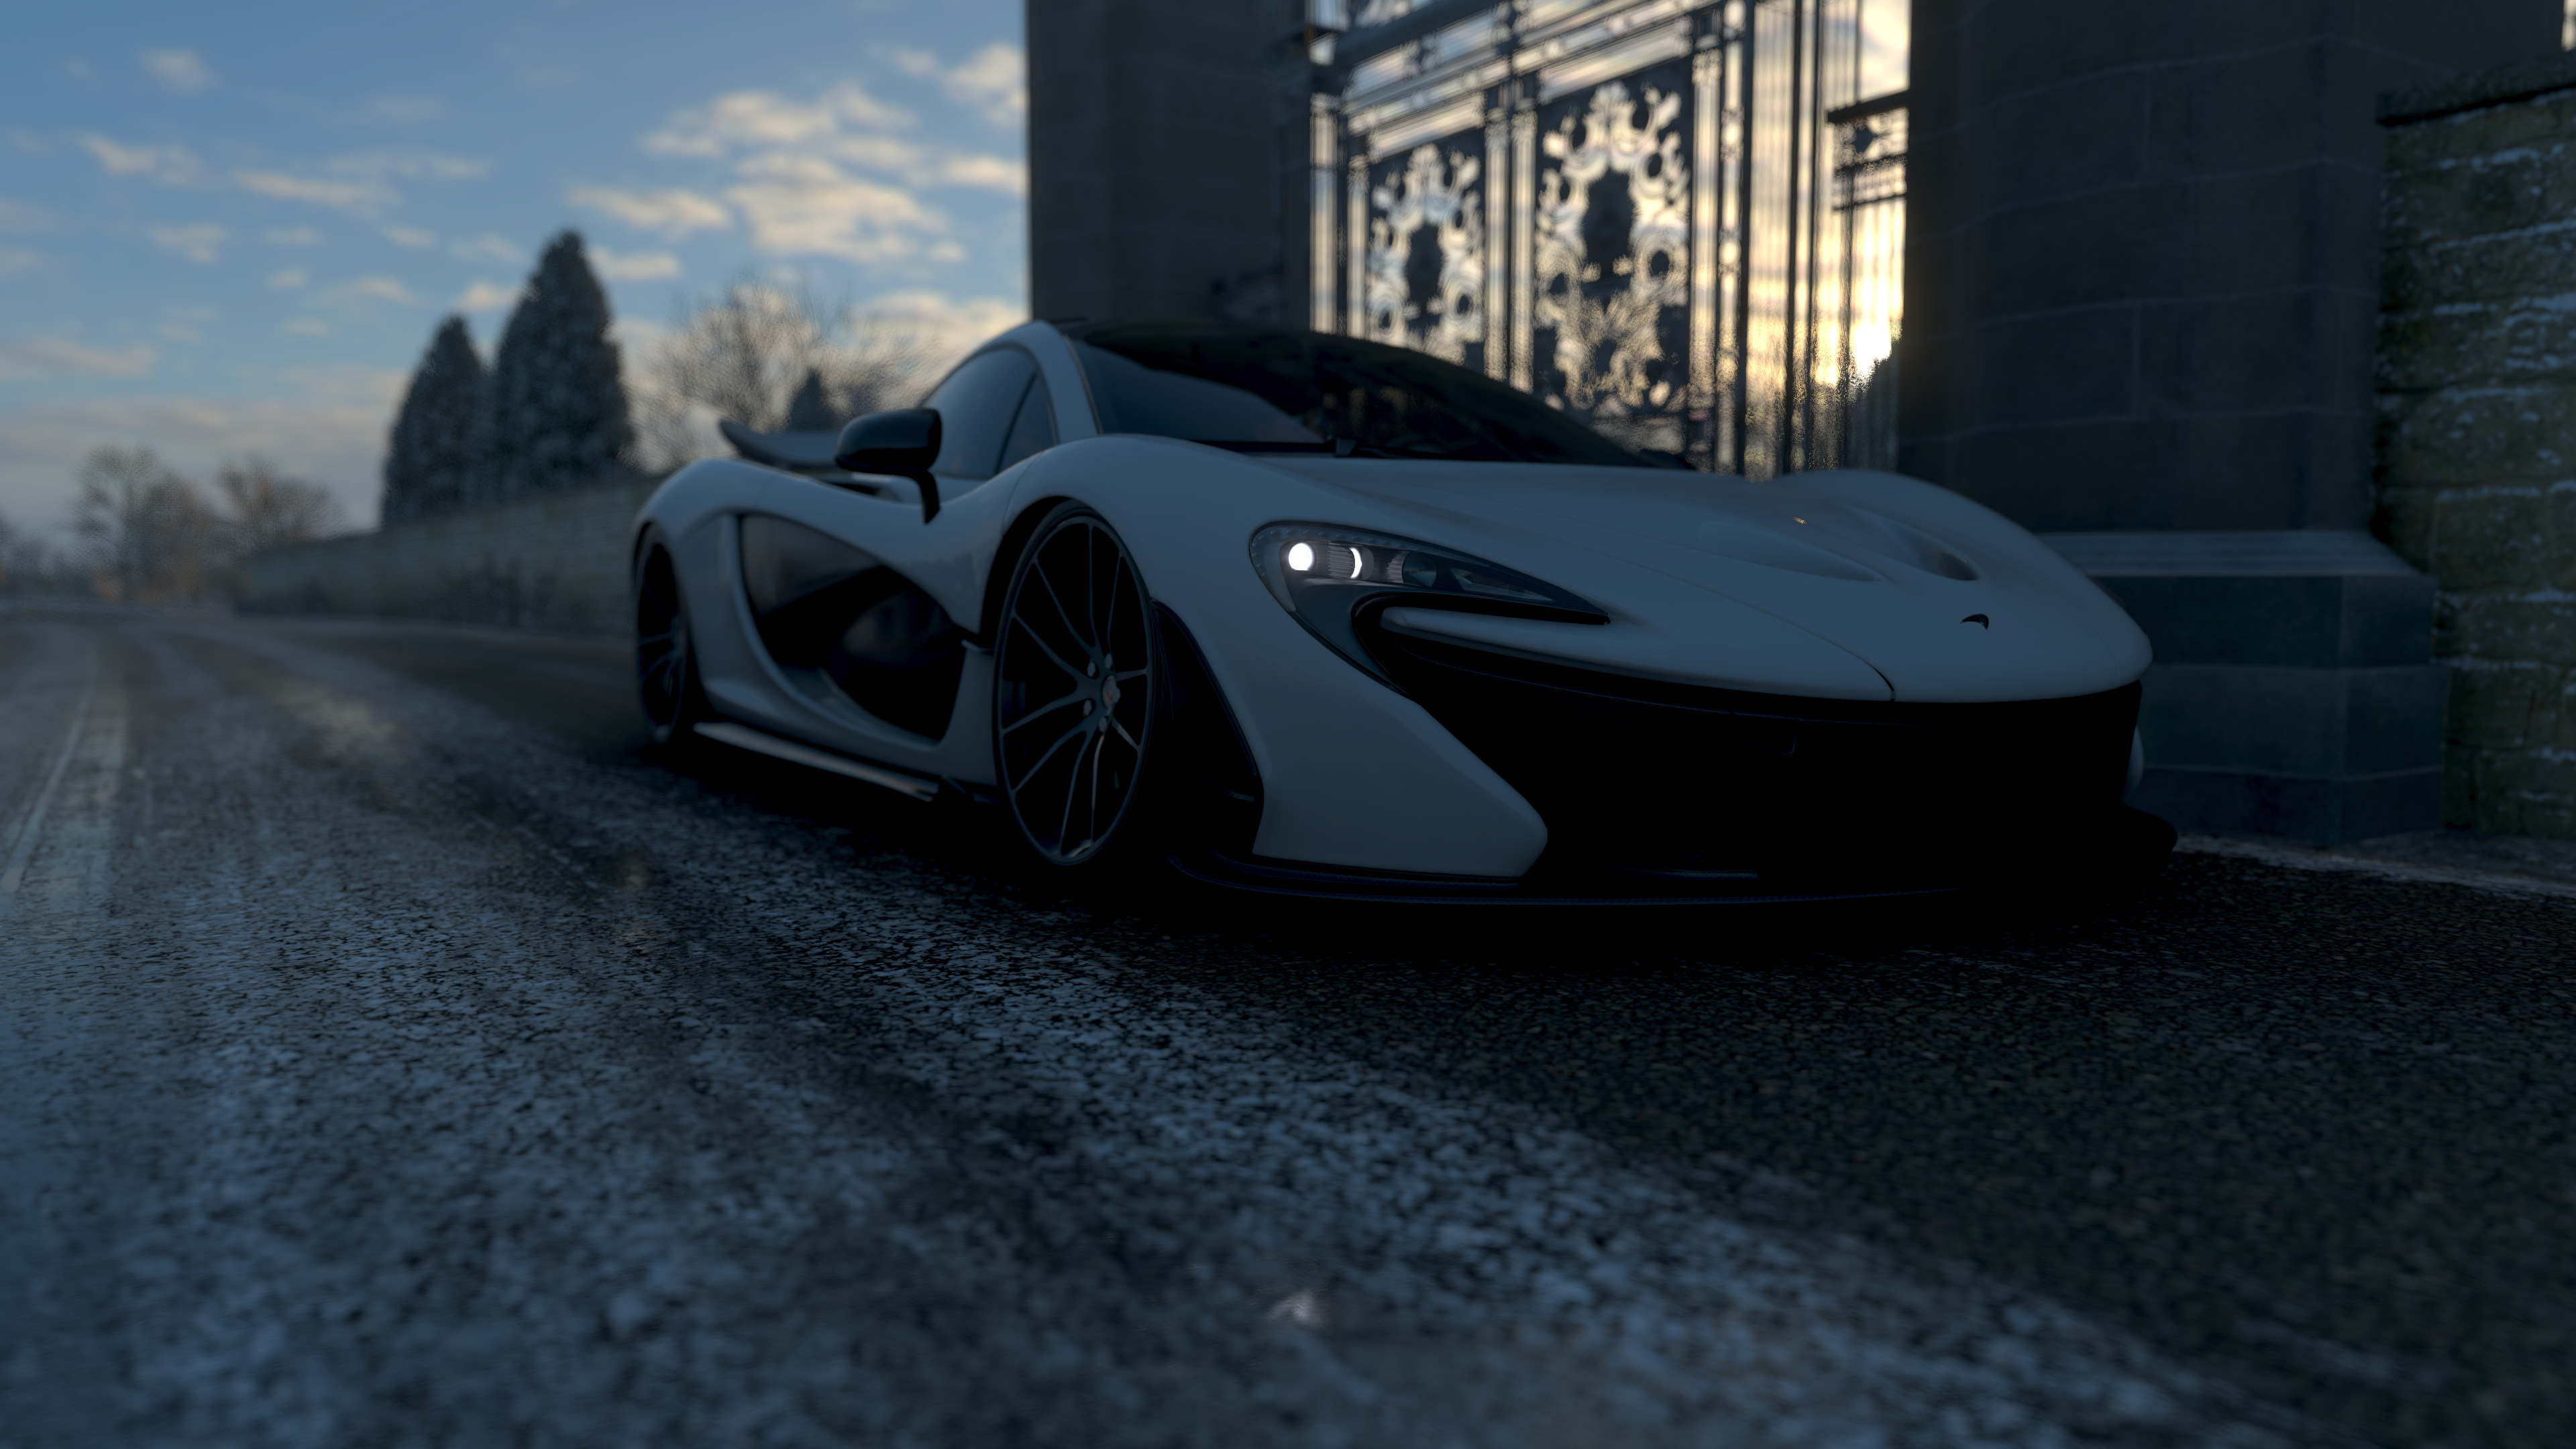 General 3840x2160 Forza Forza Horizon 4 video games screen shot car vehicle